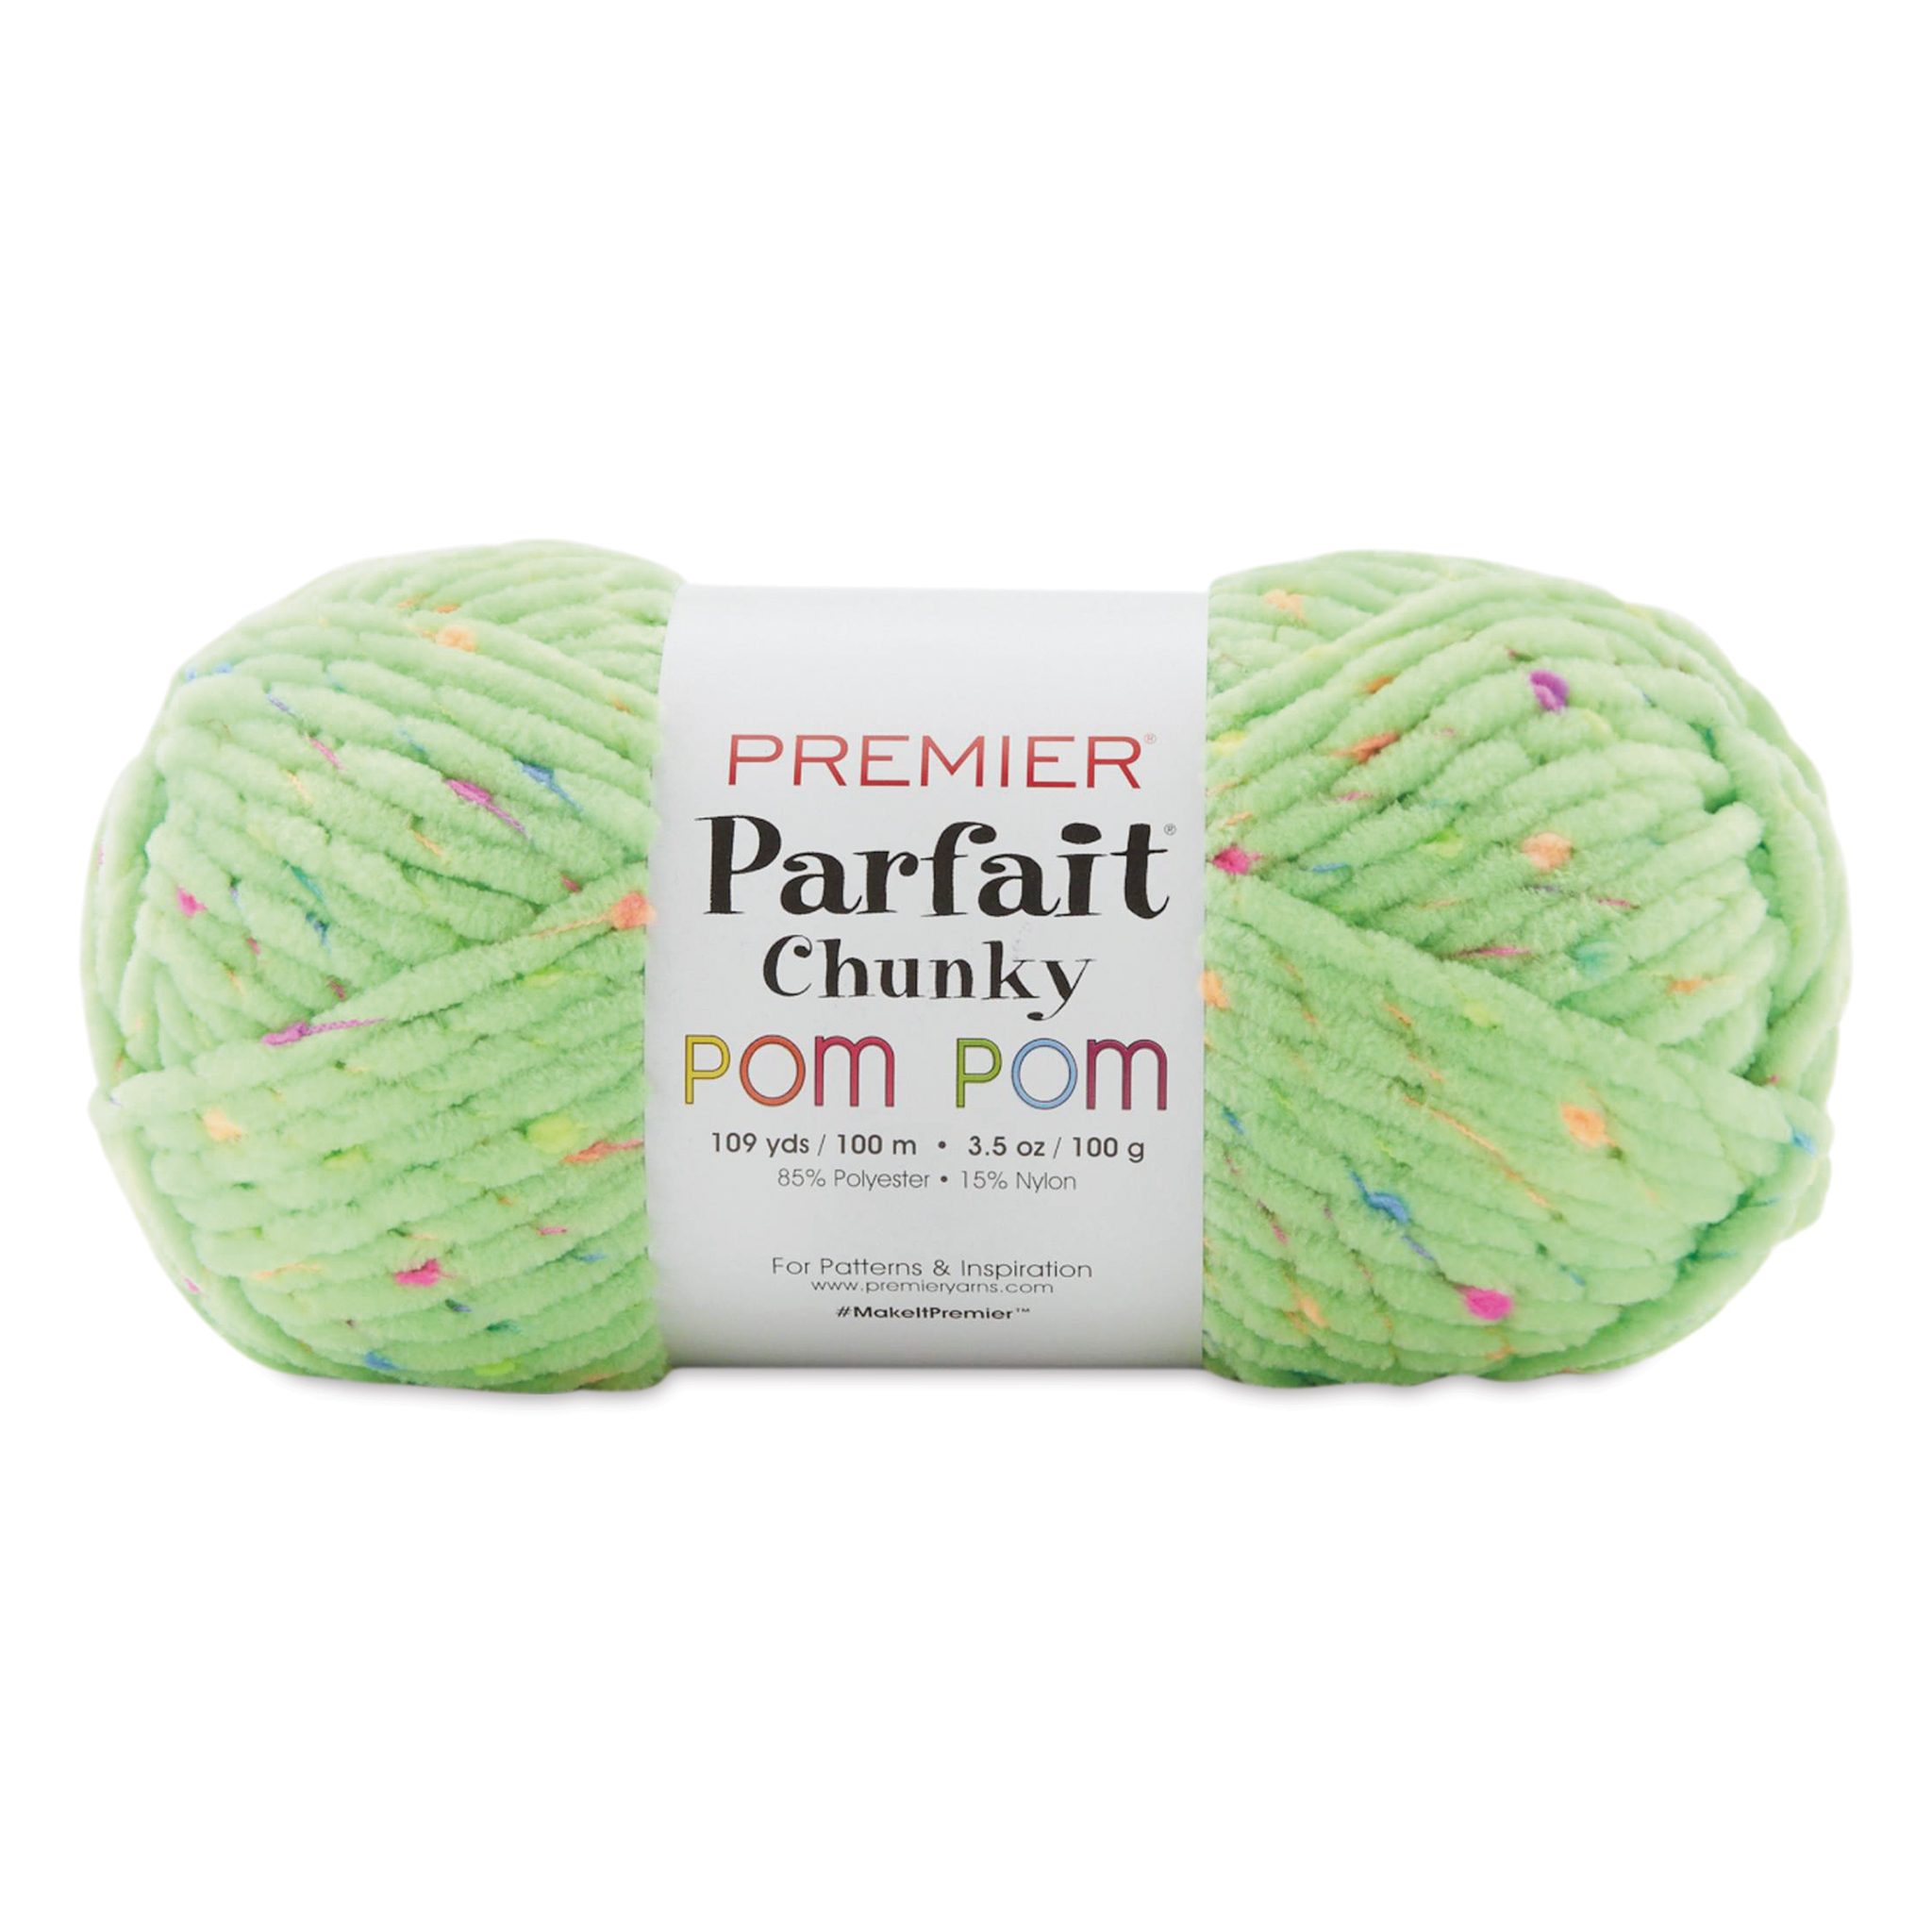 Premier Parfait Chunky POM POM Yarn, Pom Pom Parfait Yarn – ASA College:  Florida